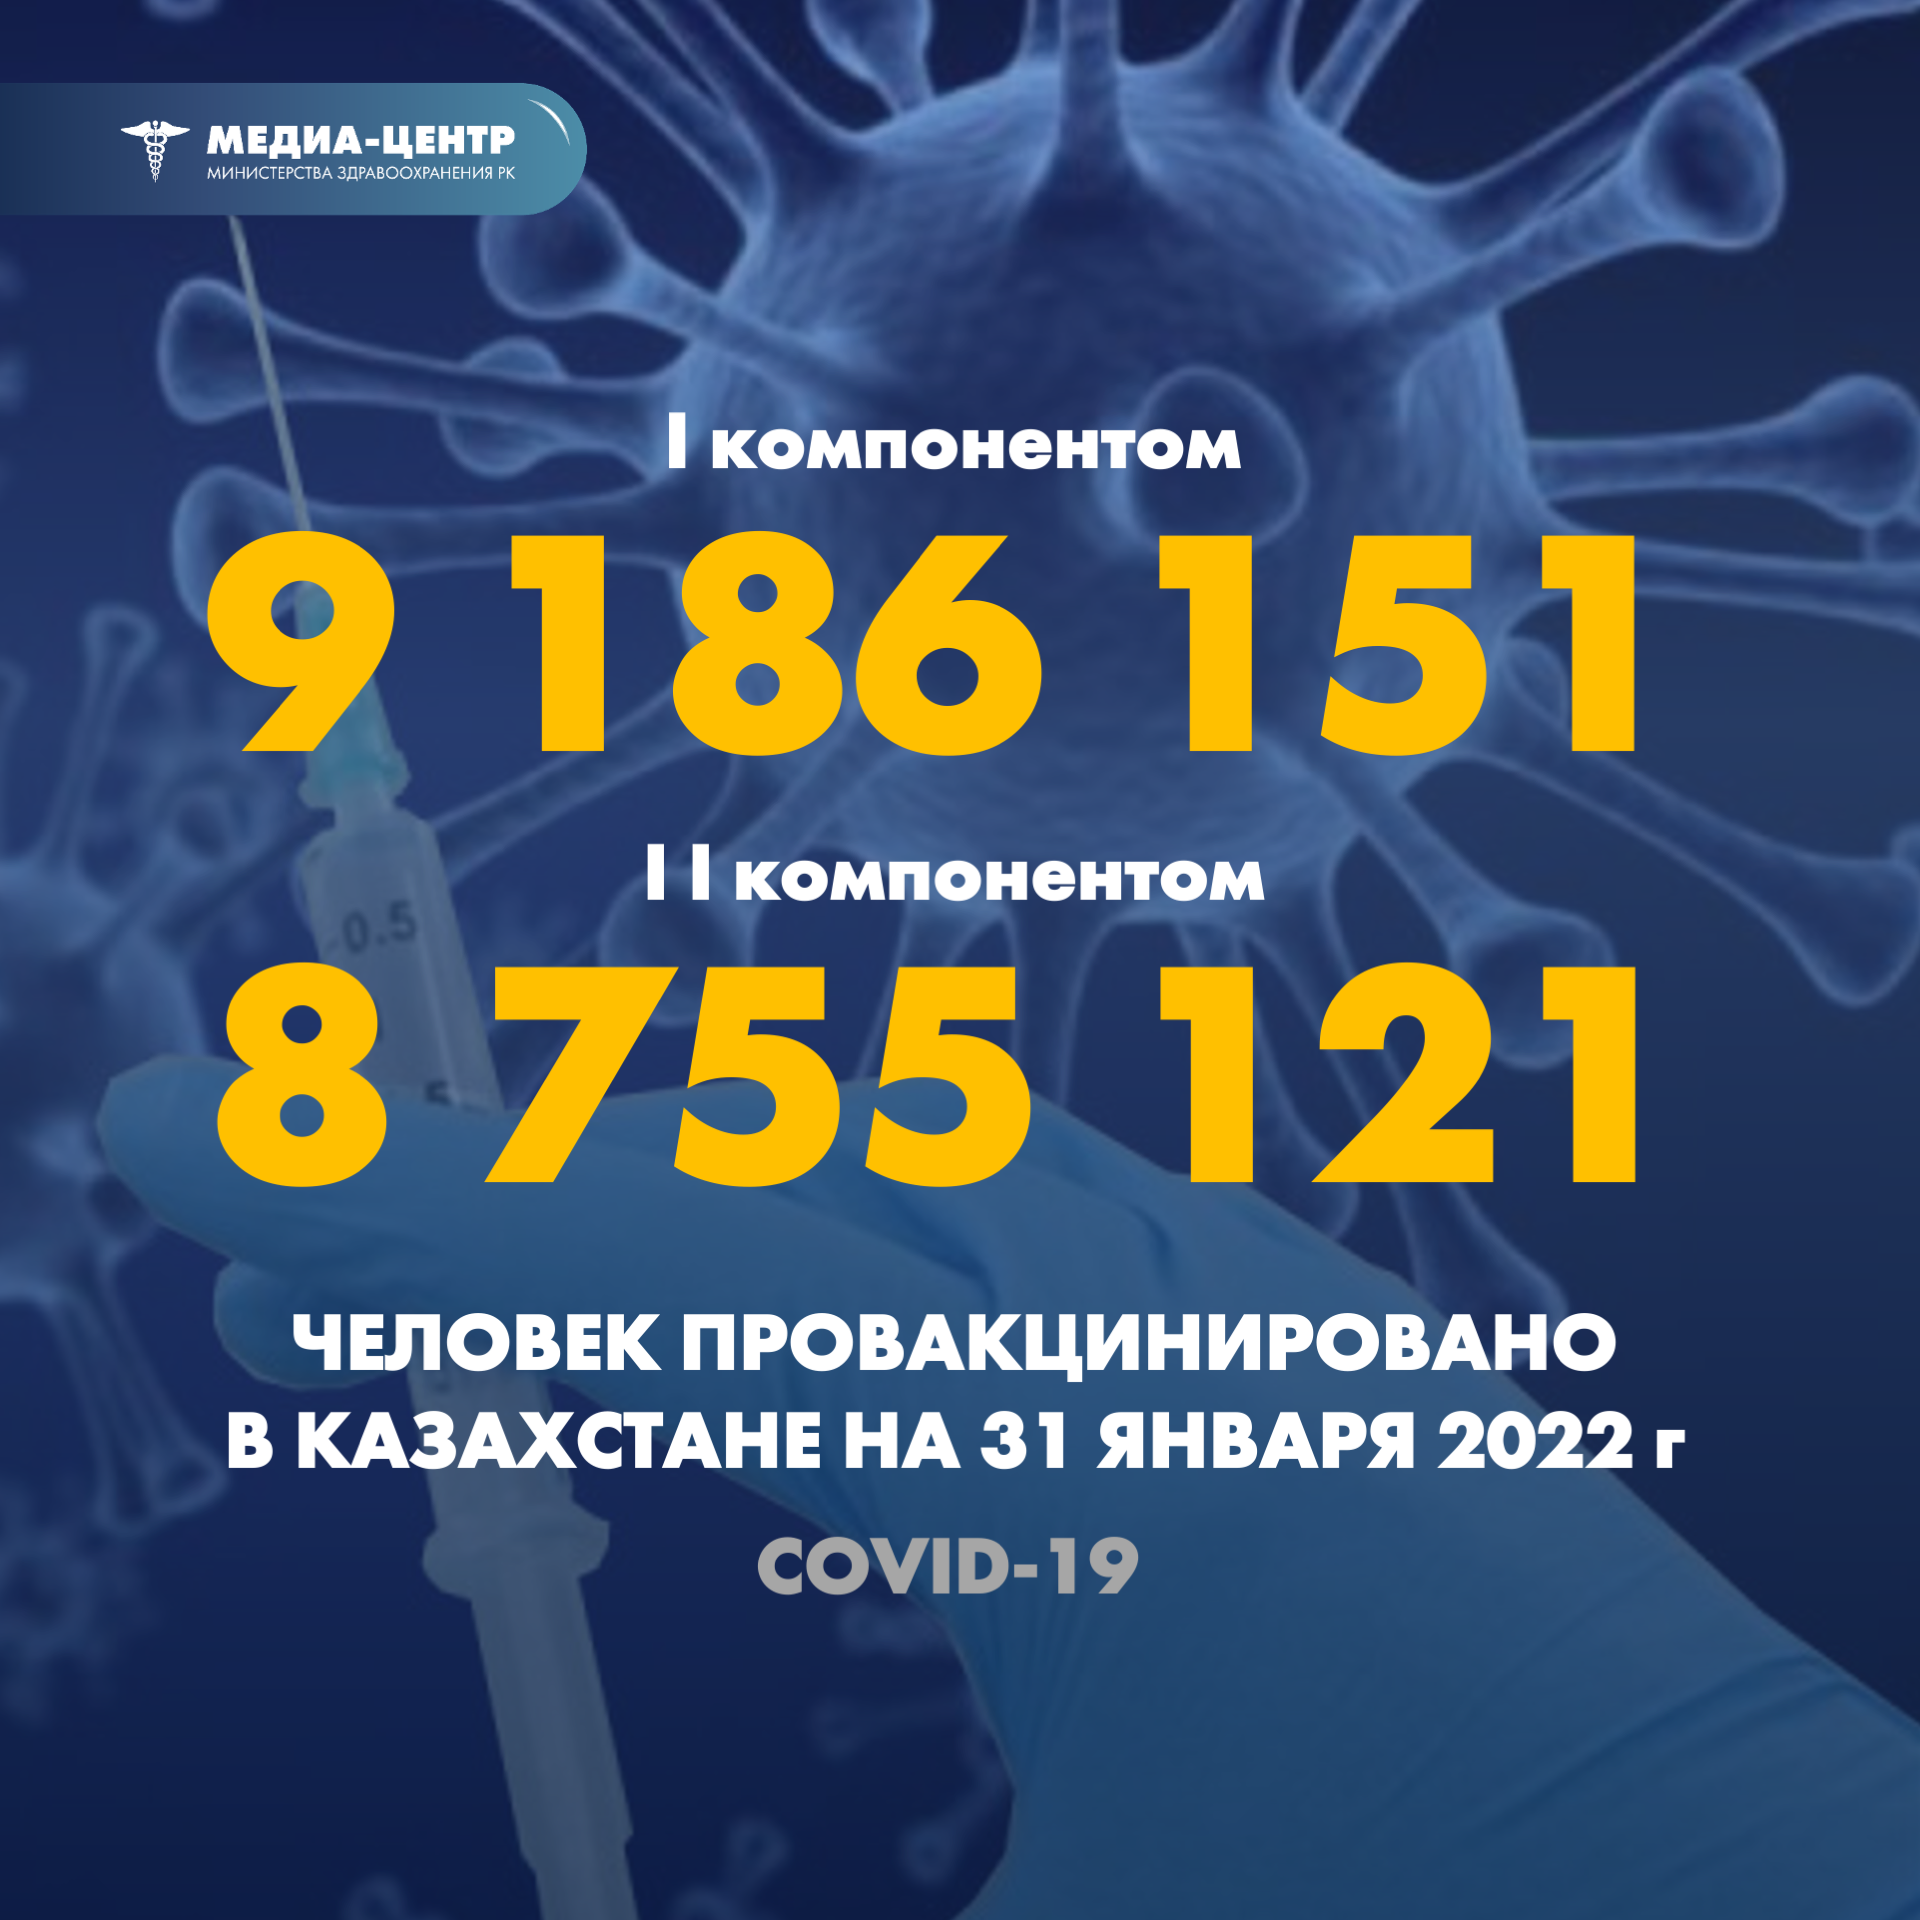 I компонентом 9 186 151 человек провакцинировано в Казахстане на 31 января 2022 г, II компонентом 8 755 121 человек.